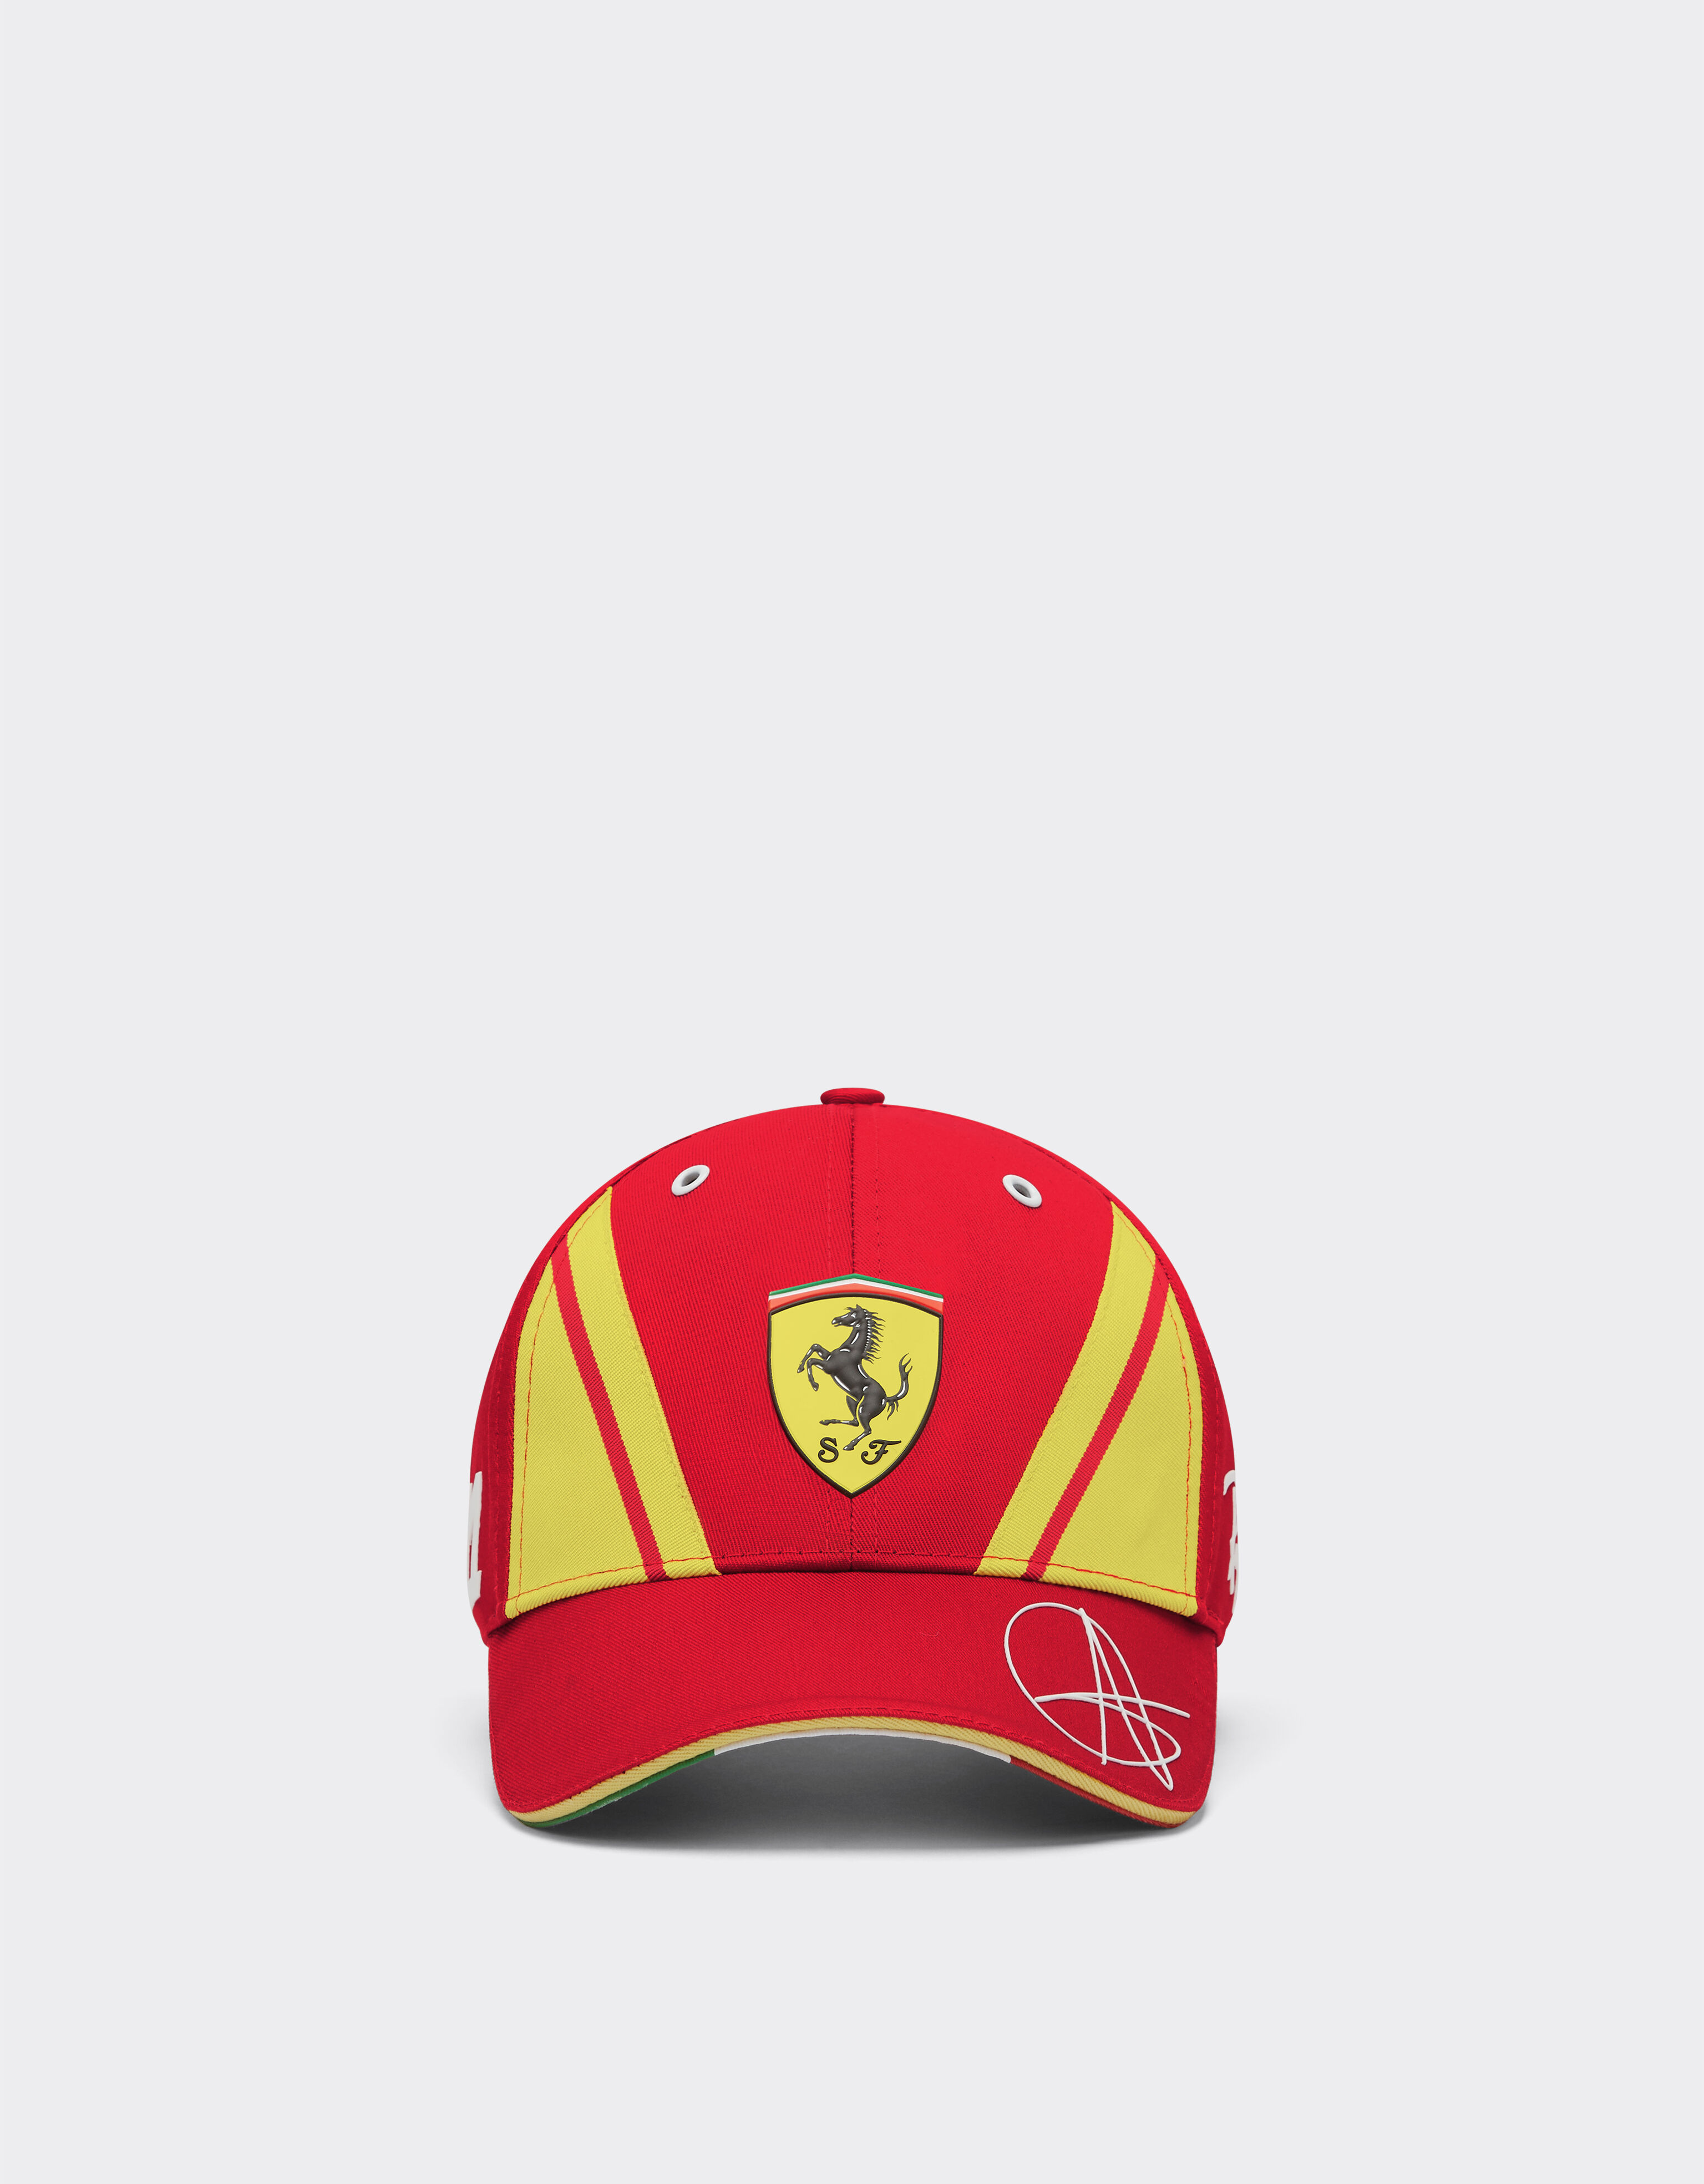 Ferrari Cappellino Giovinazzi Ferrari Hypercar - Edizione limitata Bianco Ottico F1332f